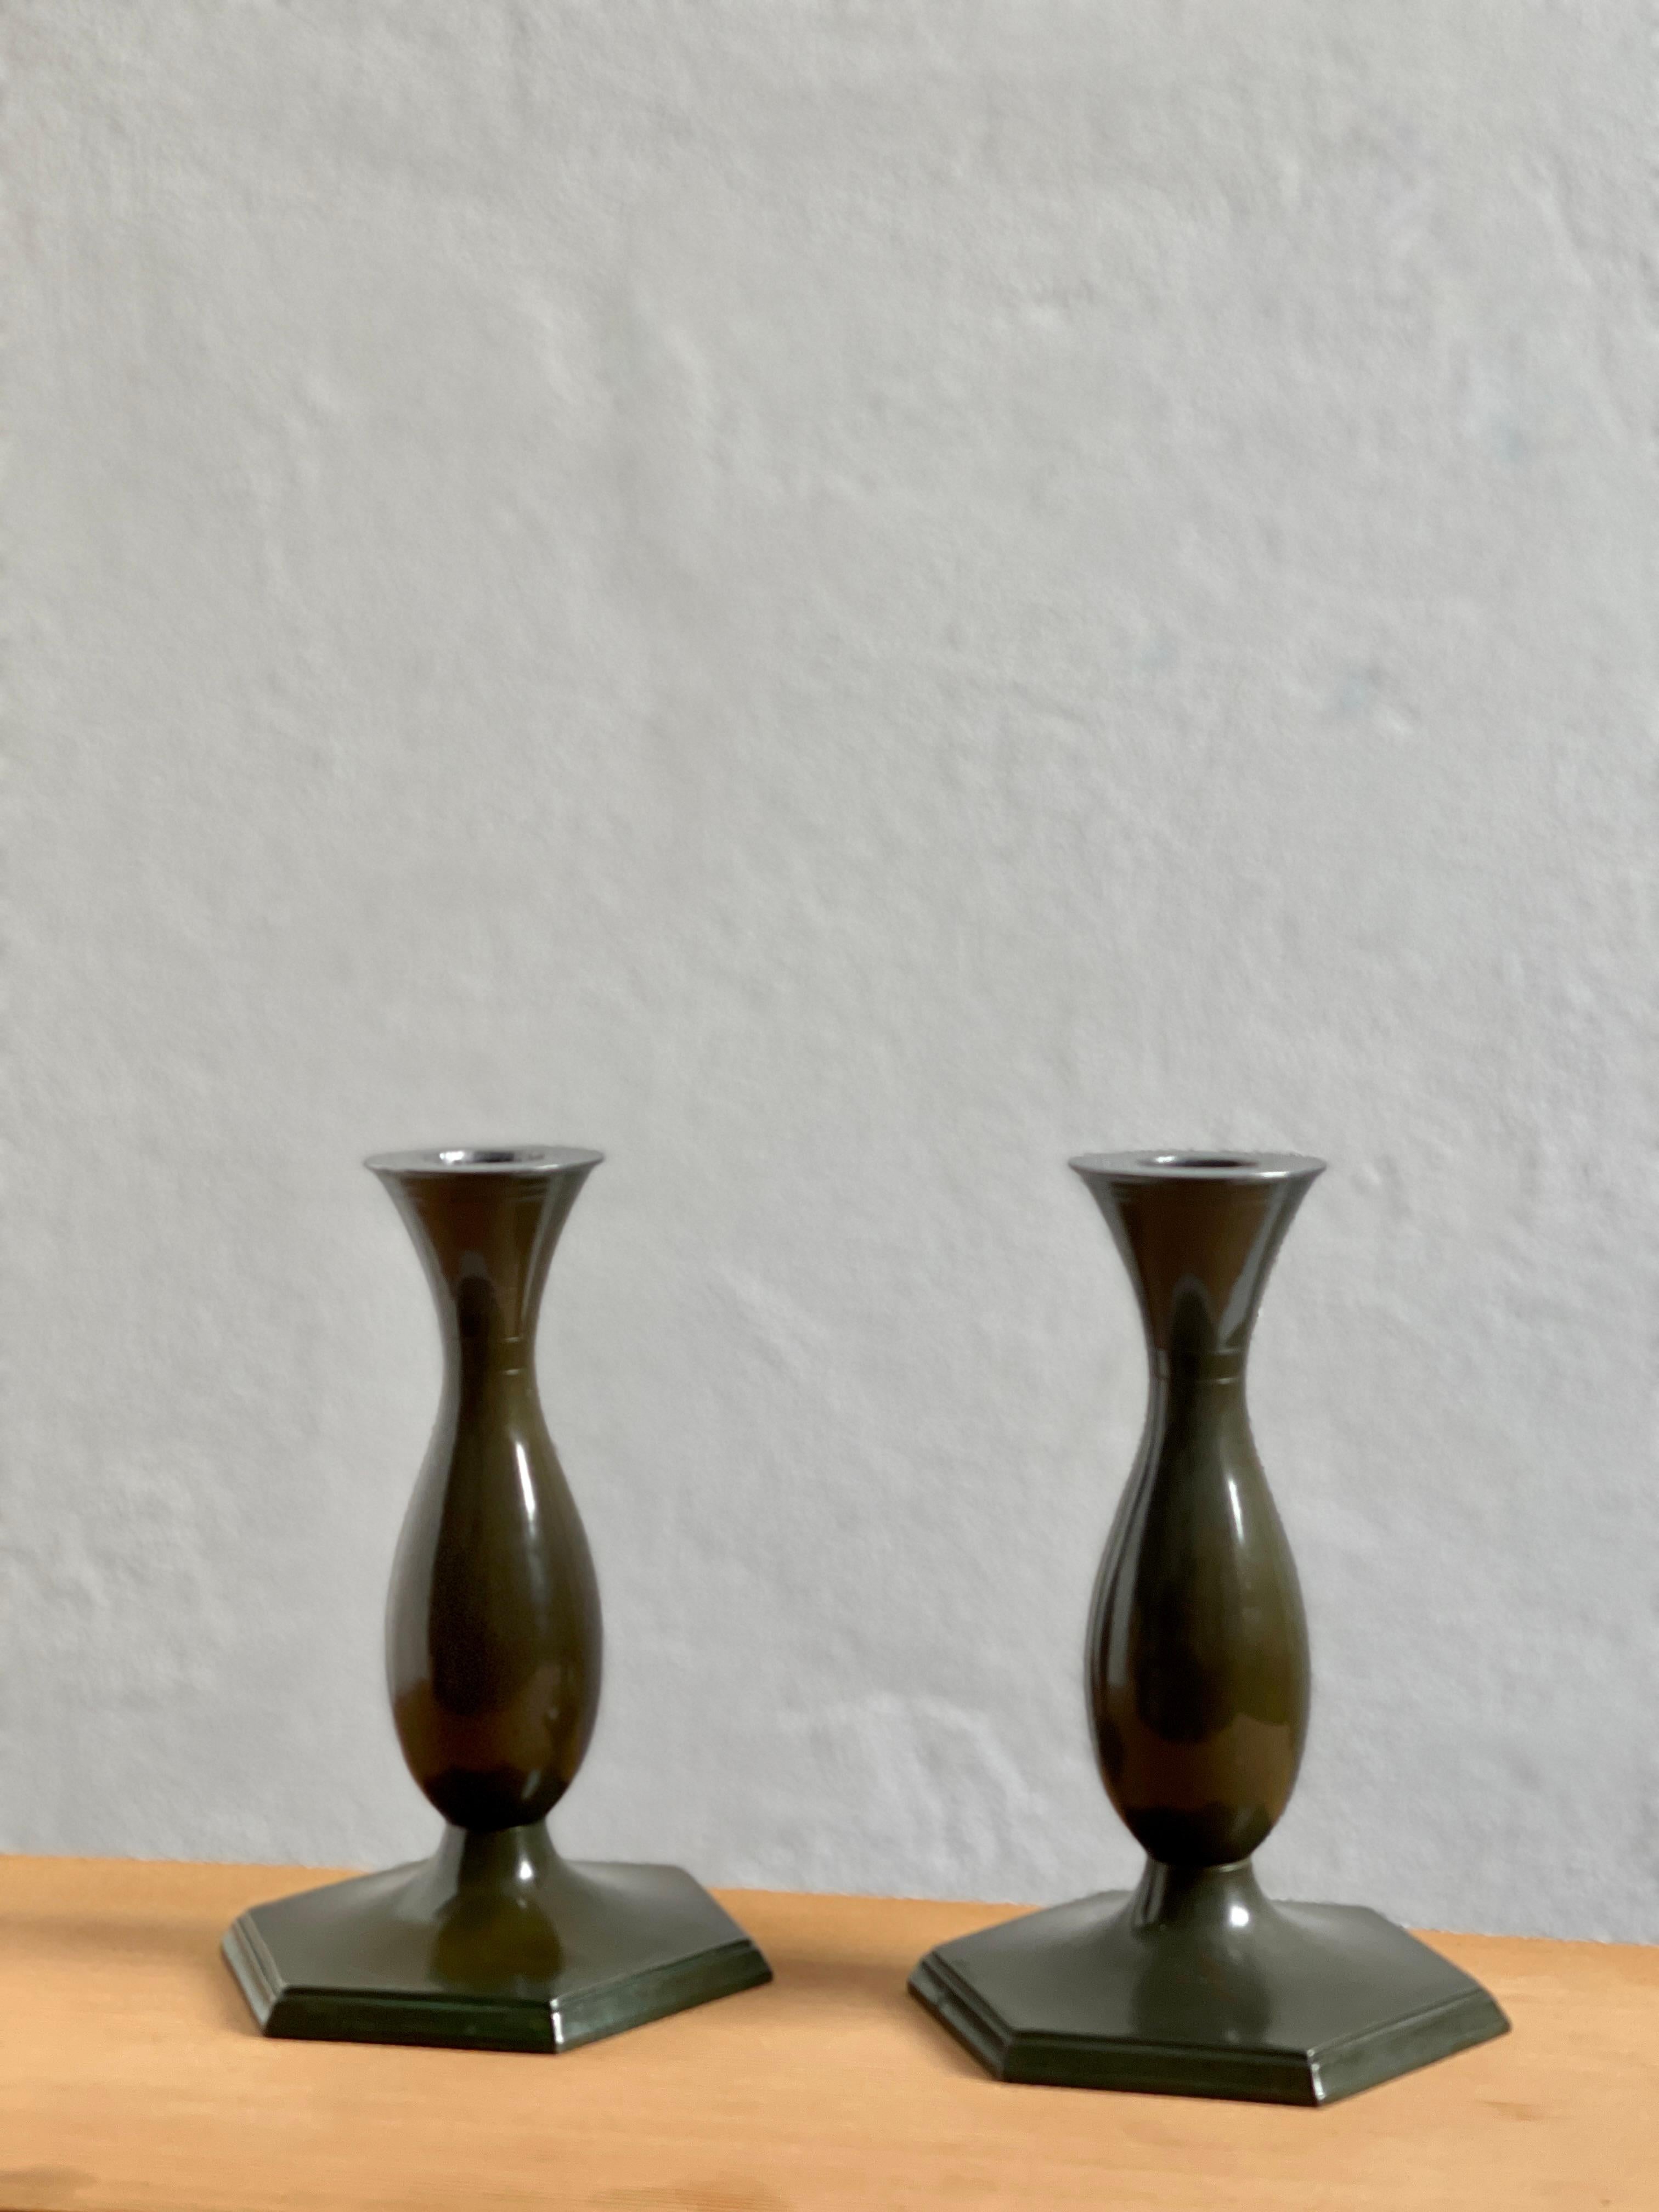 Diese exquisiten Kerzenhalter sind der Inbegriff der Eleganz des Art Déco der 1920er Jahre und wurden von den geschickten Händen des dänischen Metallarbeiters Just Andersen gefertigt. Als Zeugnis der Faszination der Epoche für geometrische Formen